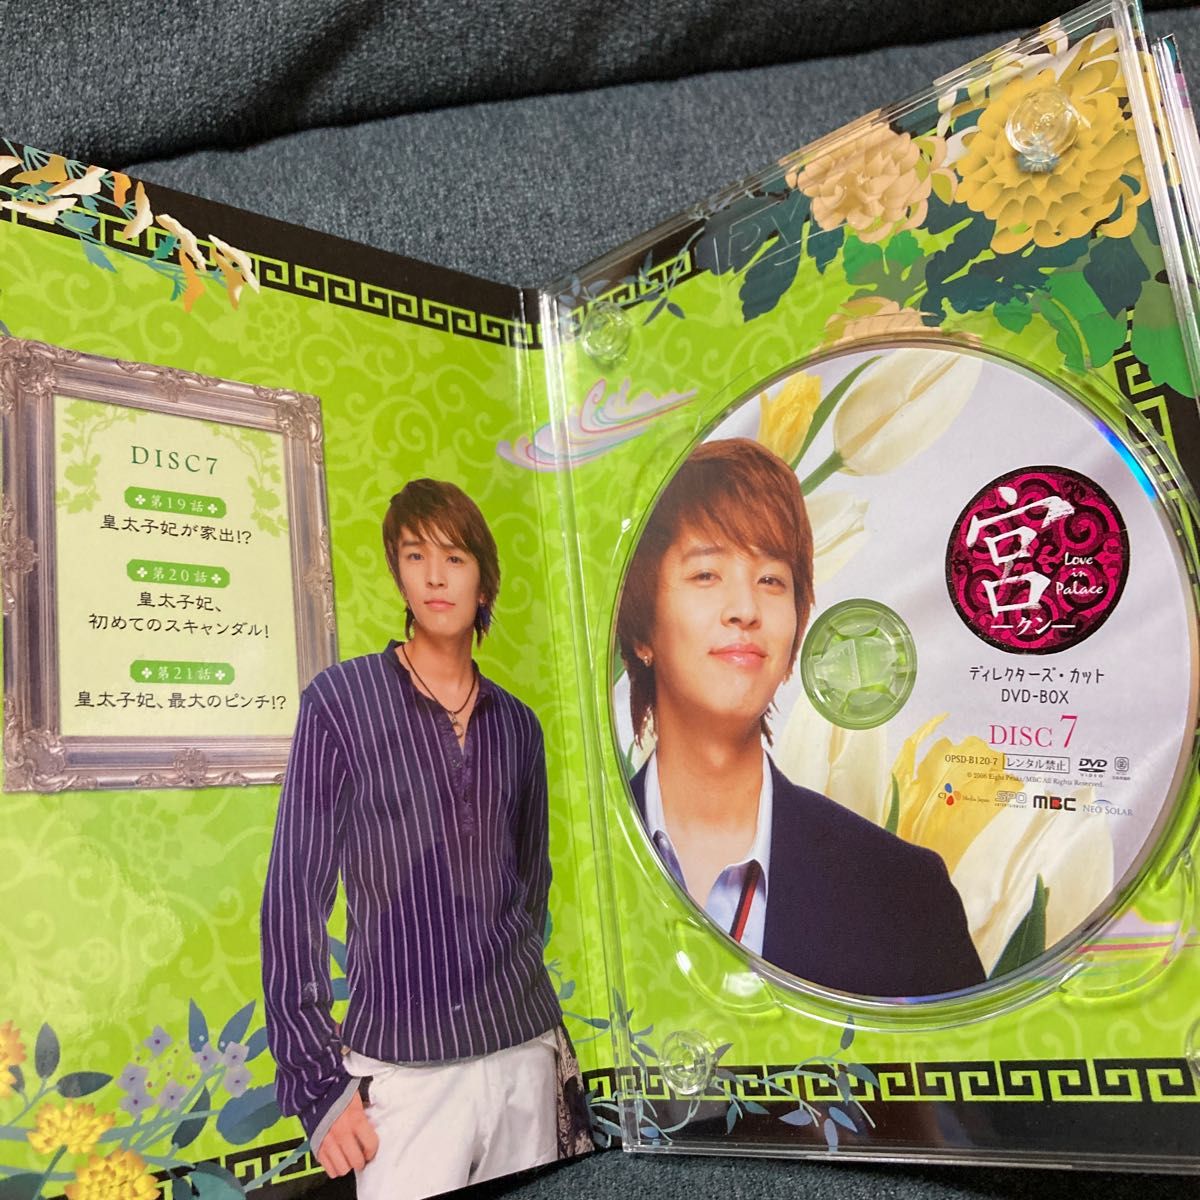 宮~Love in Palace ディレクターズカットDVD-BOX (10枚組) (2010年内生産)